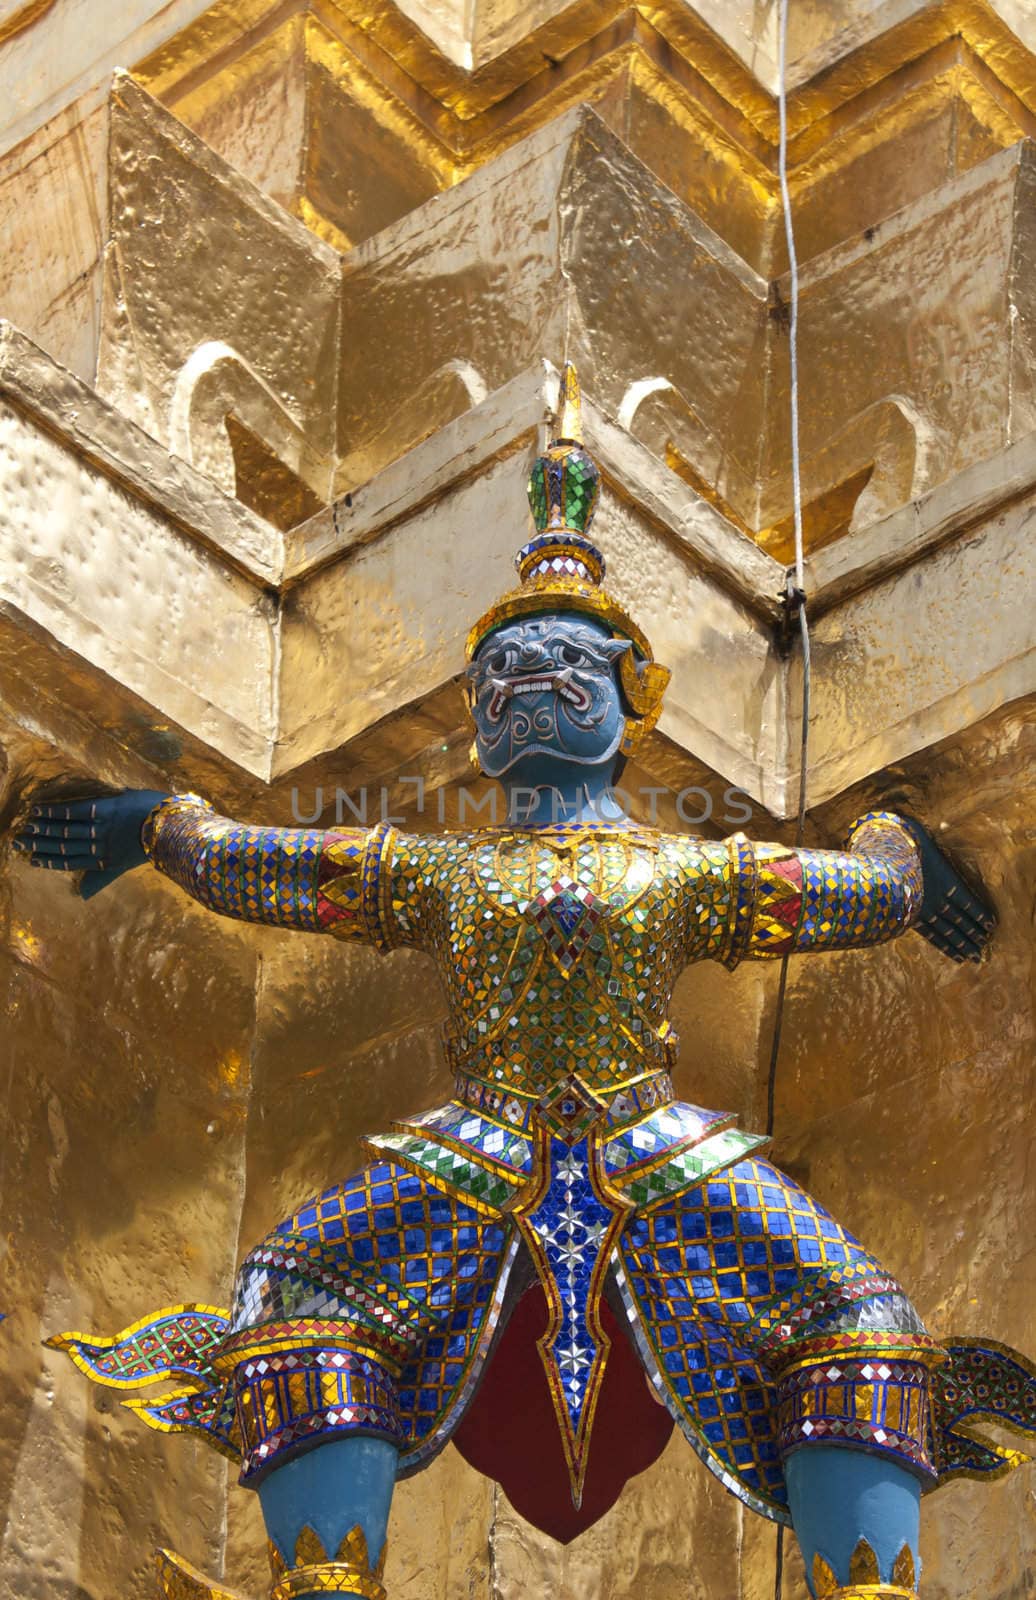 Guardian Statue at the Grand Palace in Bangkok, Thailand 